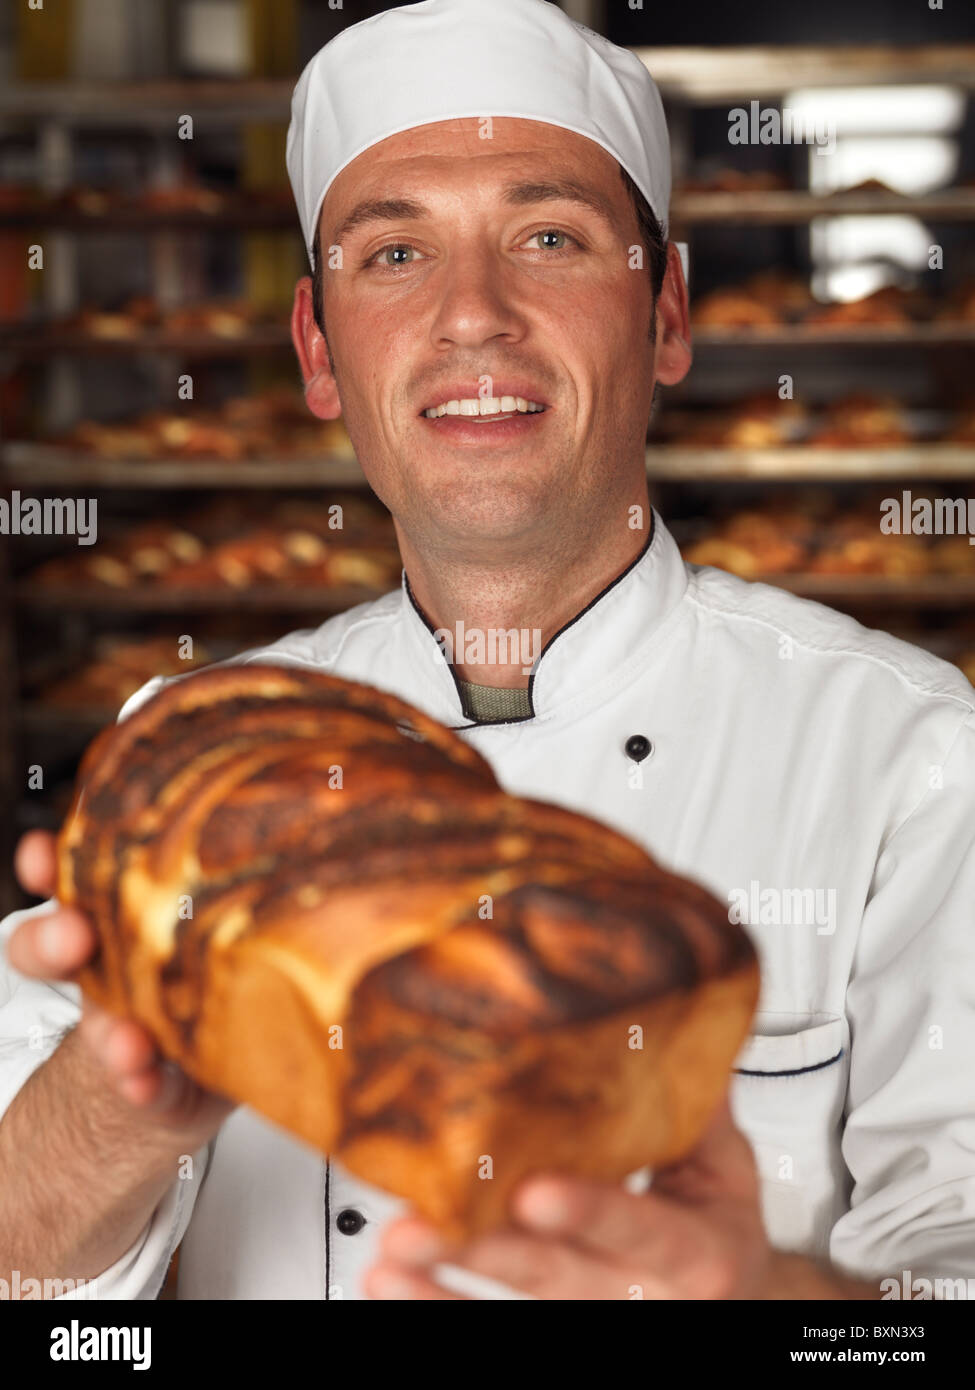 Smiling Baker un pain fraîchement cuit de pain dans ses mains Banque D'Images